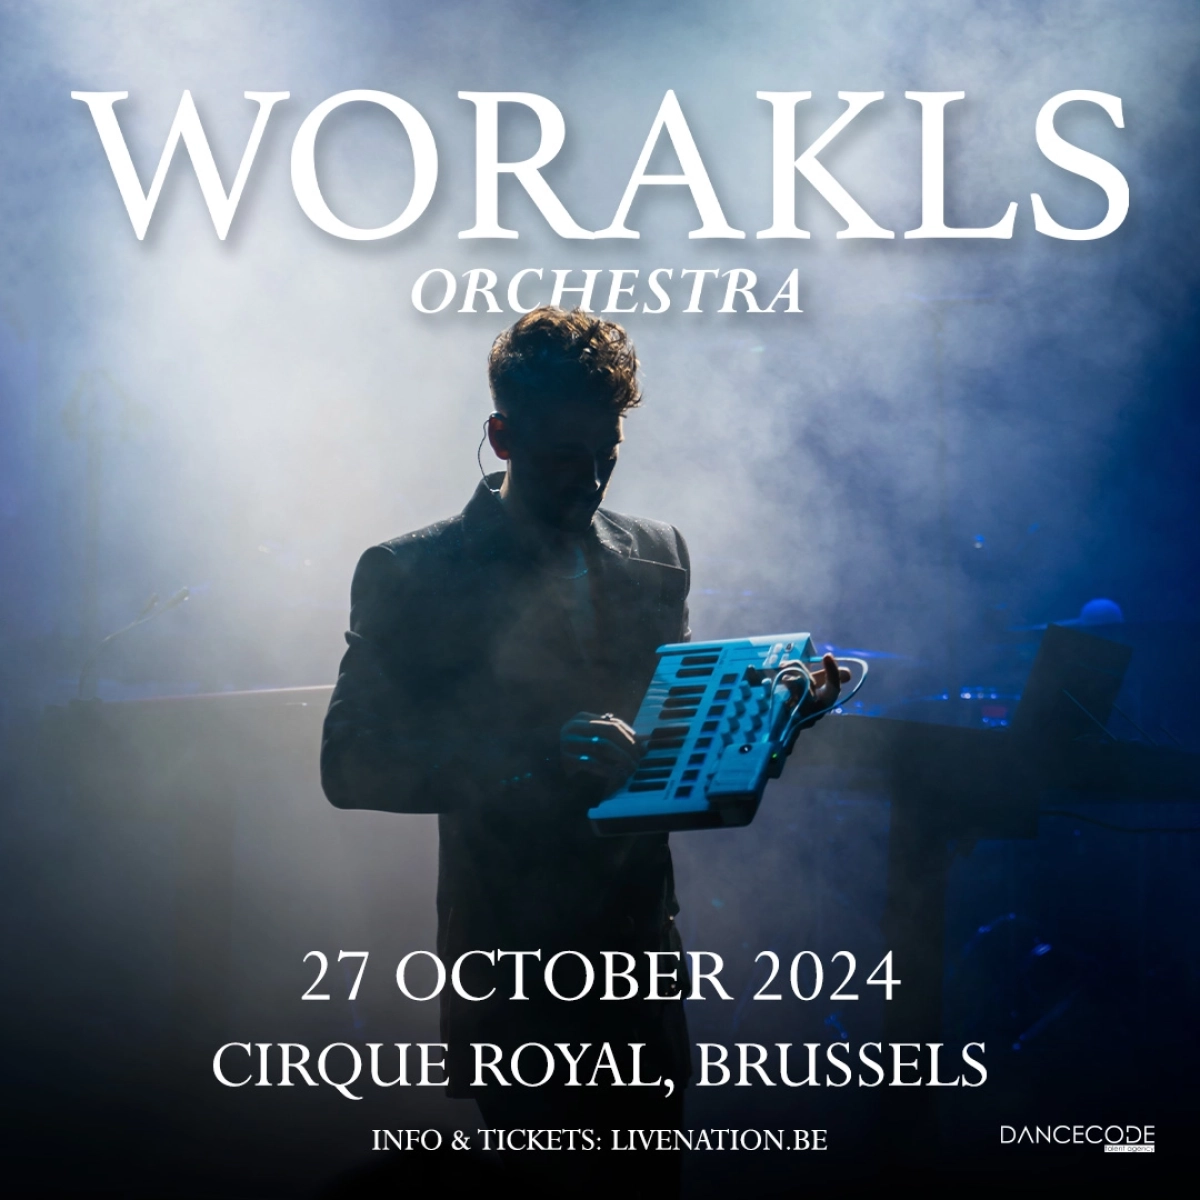 Concert Worakls à Bruxelles (Cirque Royal Bruxelles) du 27 octobre 2024